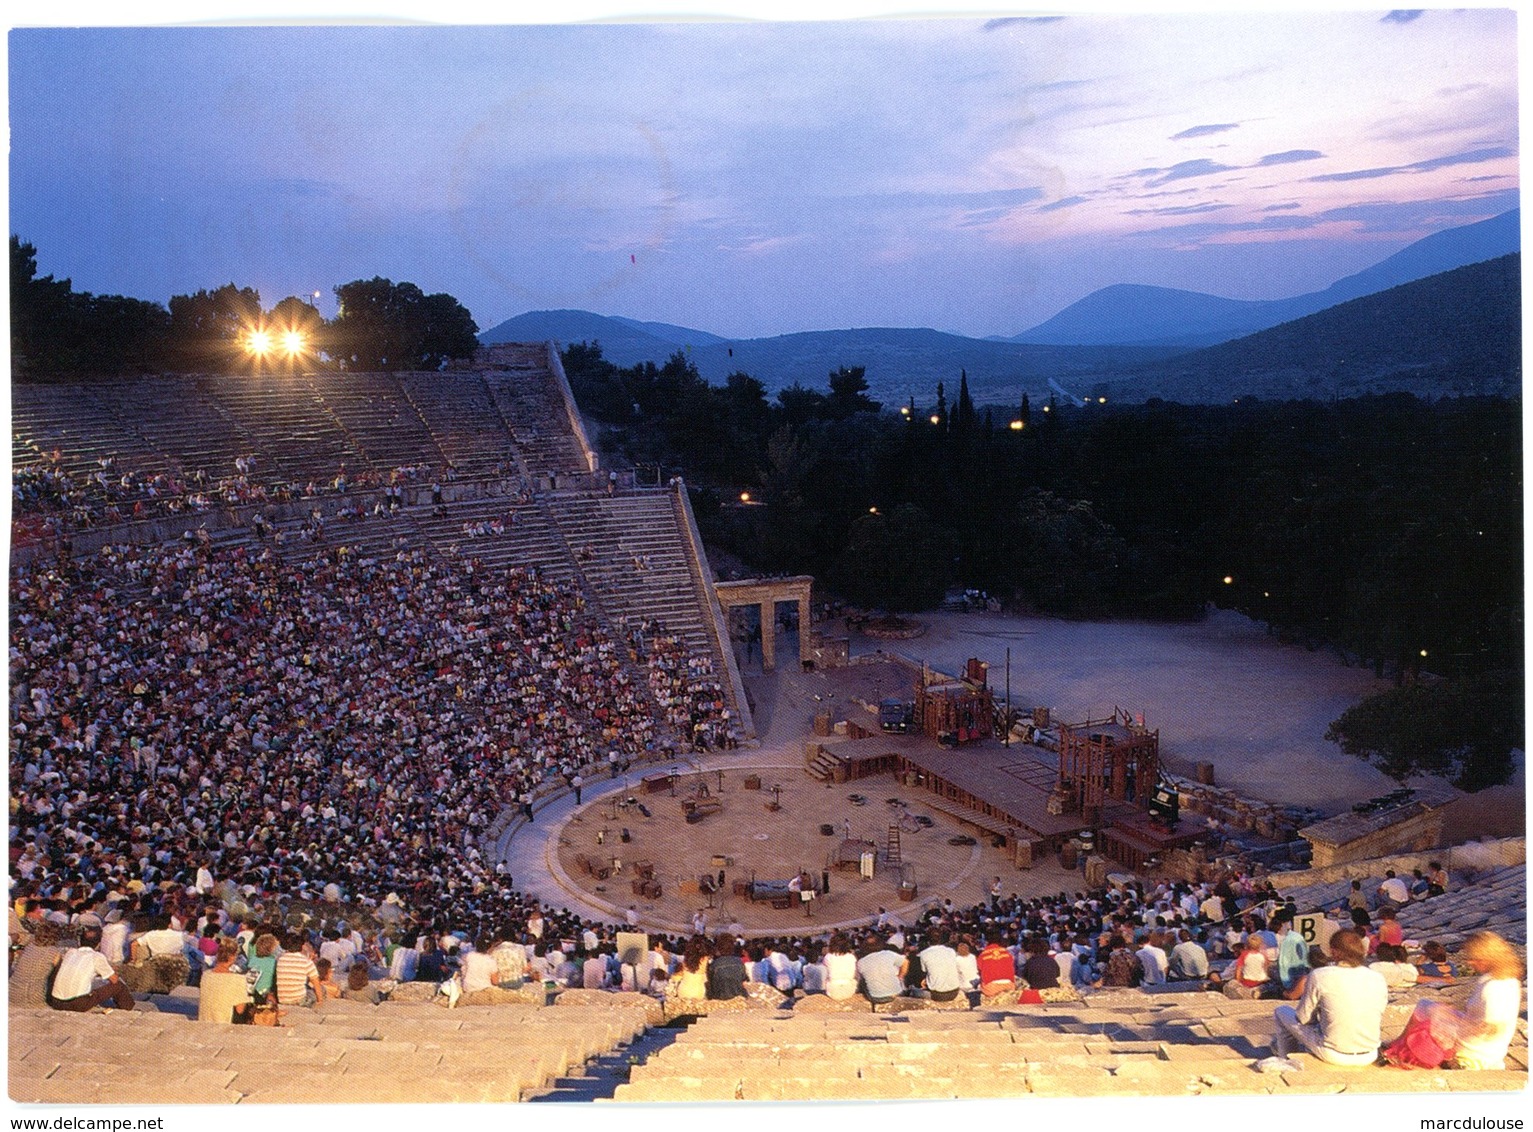 Epidaurus. Asclepieion. The Theatre. Epidaure. Asclépieion. Le Théâtre. Epidauros. Asklepieion. Das Theater. - Grèce